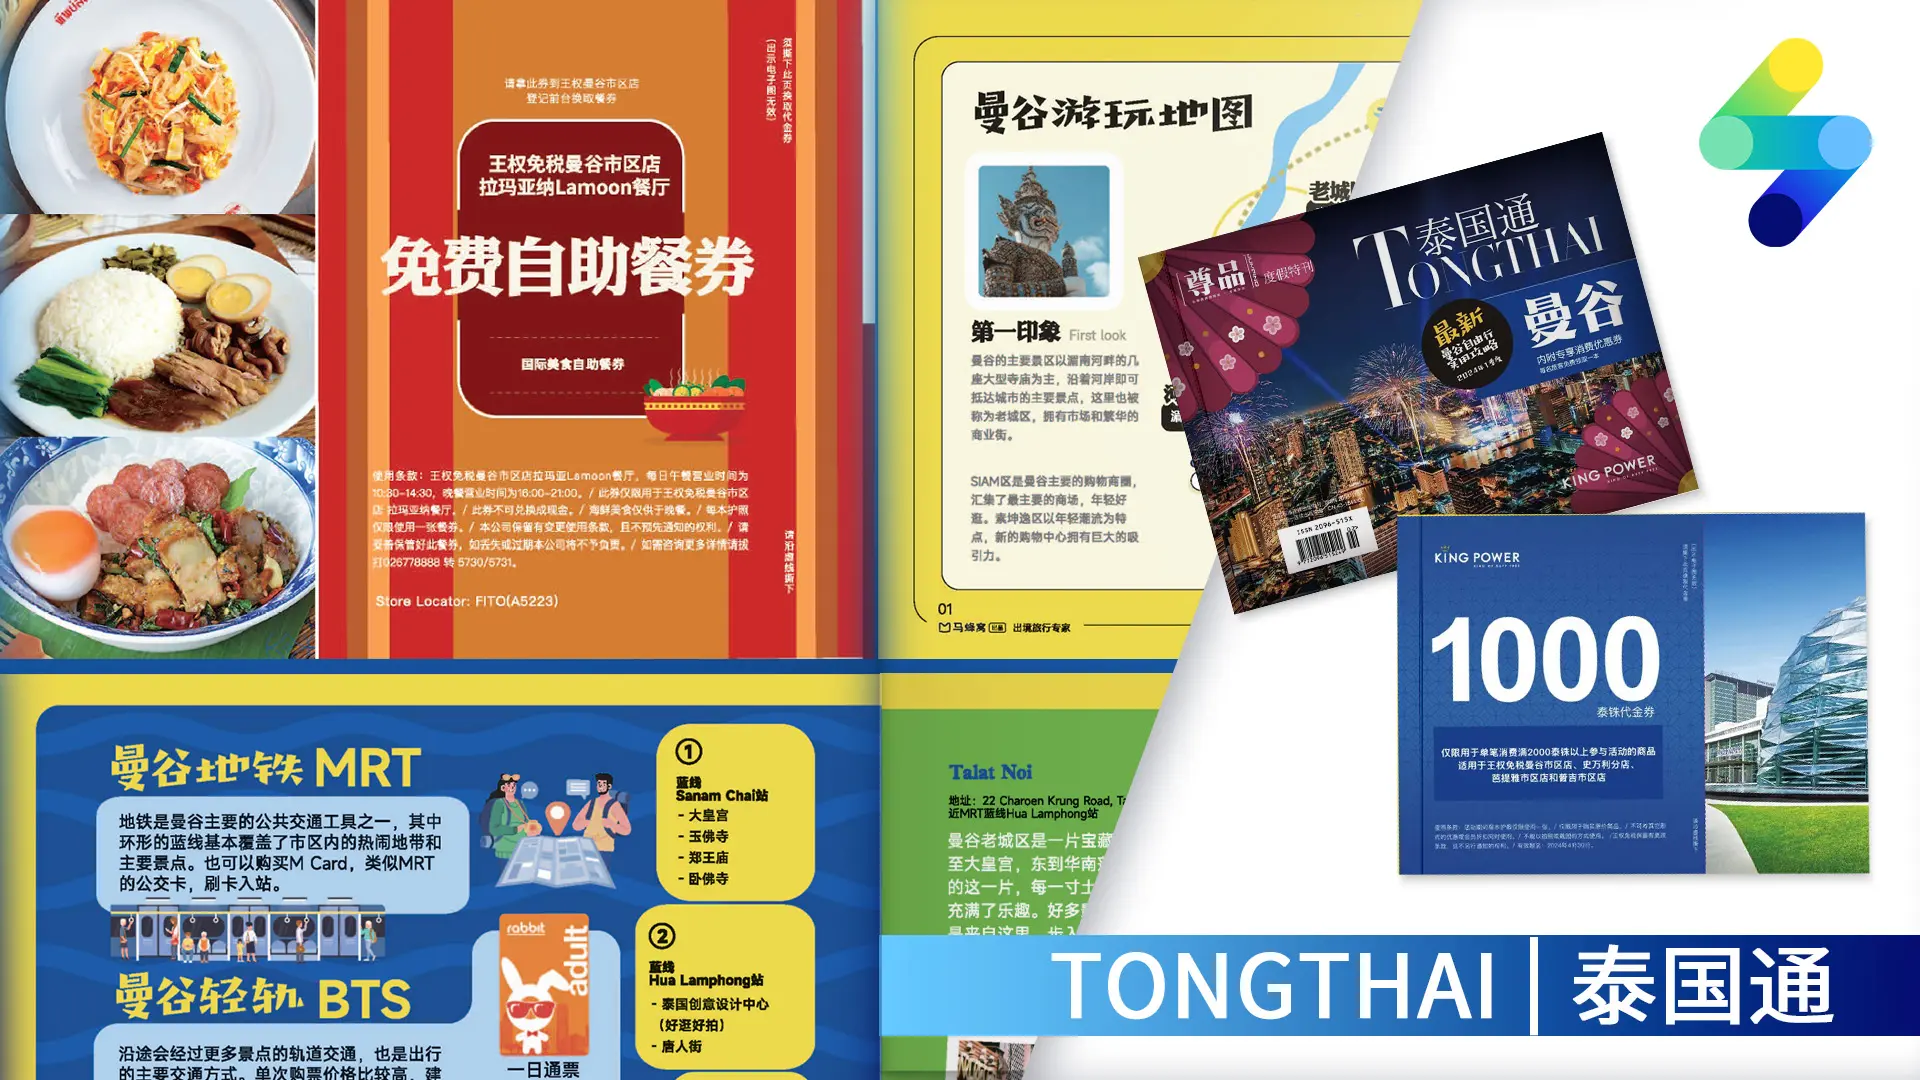 นิยสารท่องไทยฉบับ Pocket Travel Guidebook แจกที่สนามบินจีนให้นักท่องเที่ยวจีน